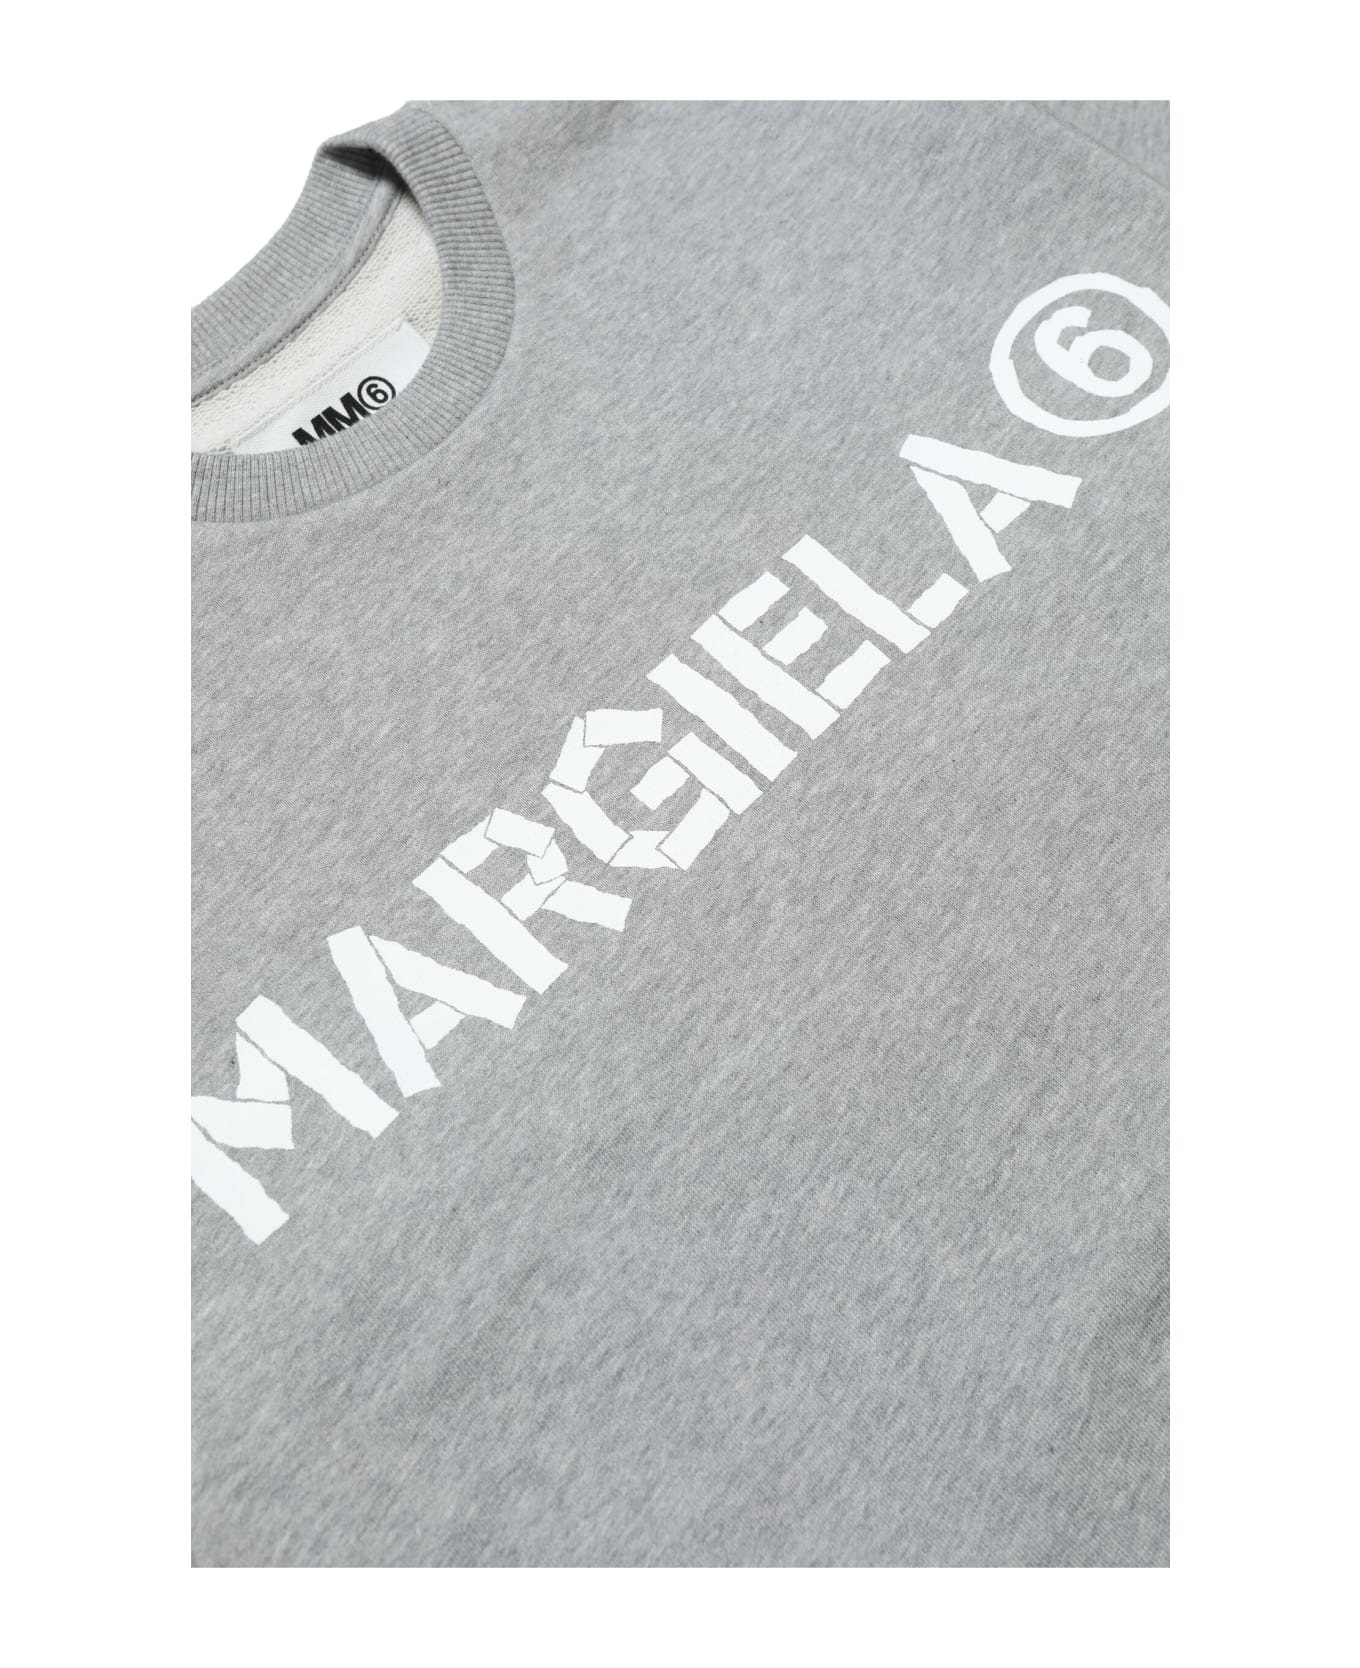 Maison Margiela Mm6s61u Sweat-shirt Maison Margiela Cotton M Nge Ccrew-neck Sweatshirt With Logo - GREY